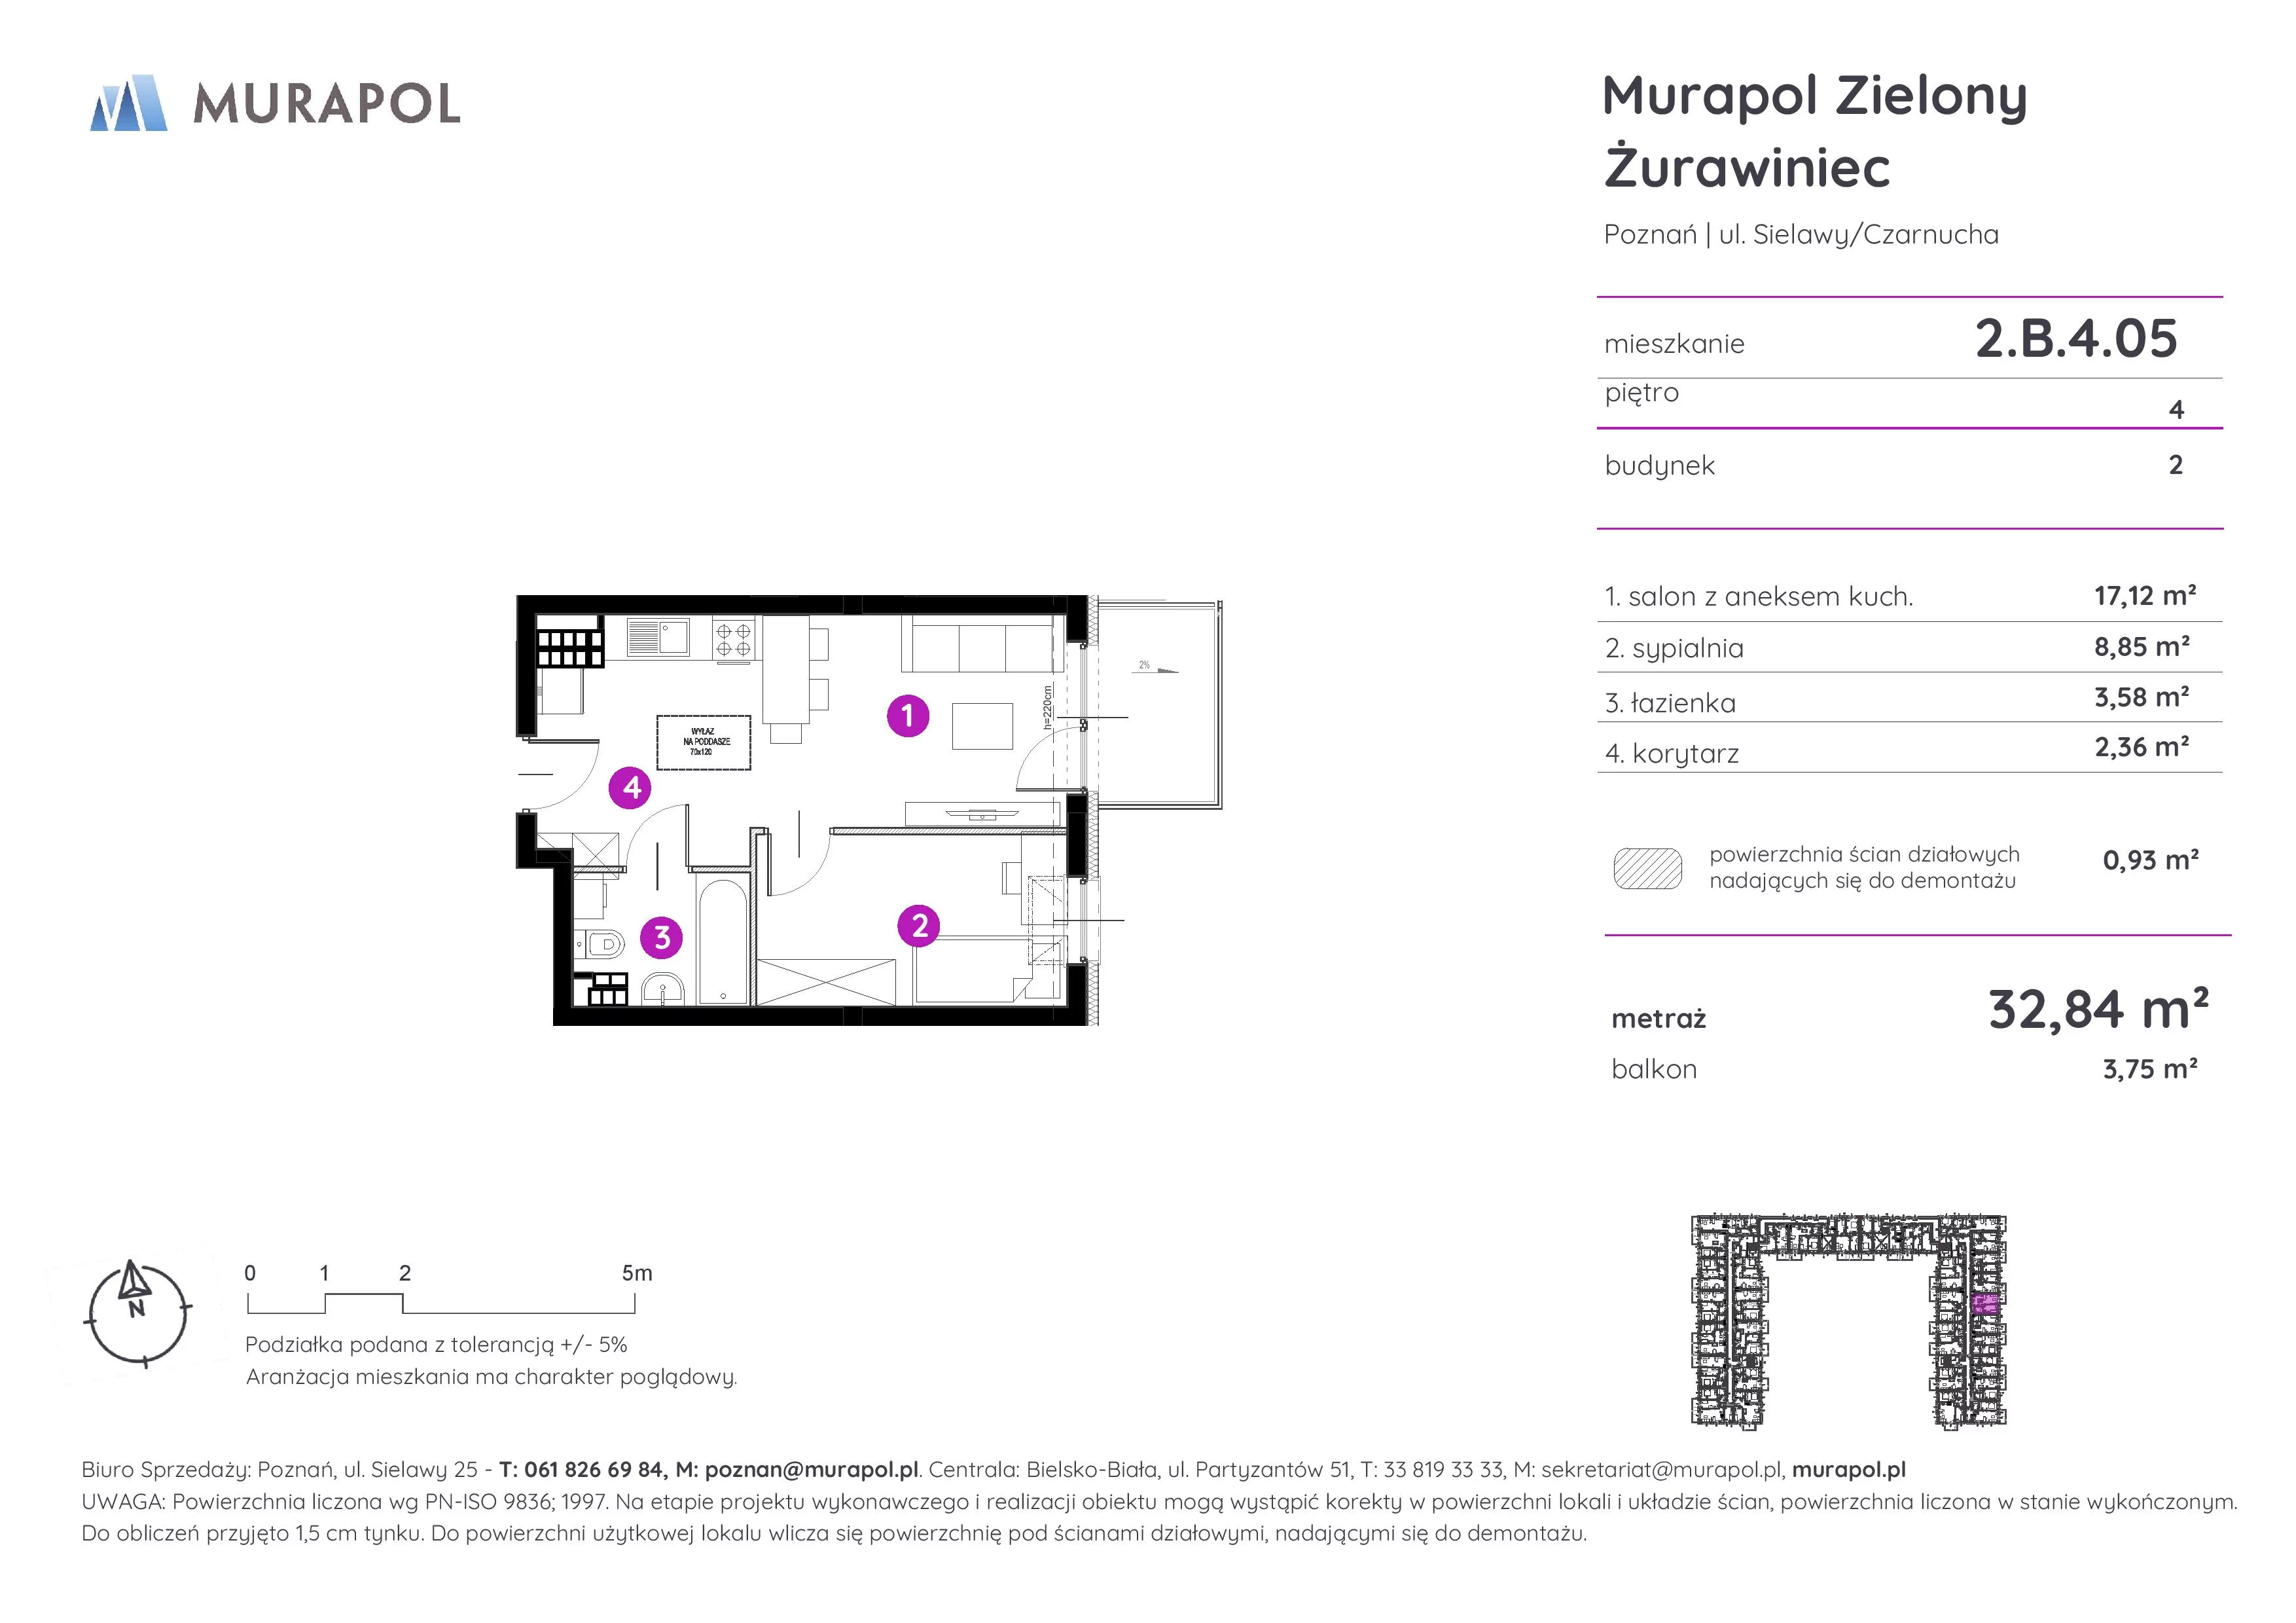 Mieszkanie 32,84 m², piętro 4, oferta nr 2.B.4.05, Murapol Zielony Żurawiniec, Poznań, Naramowice, ul. Sielawy